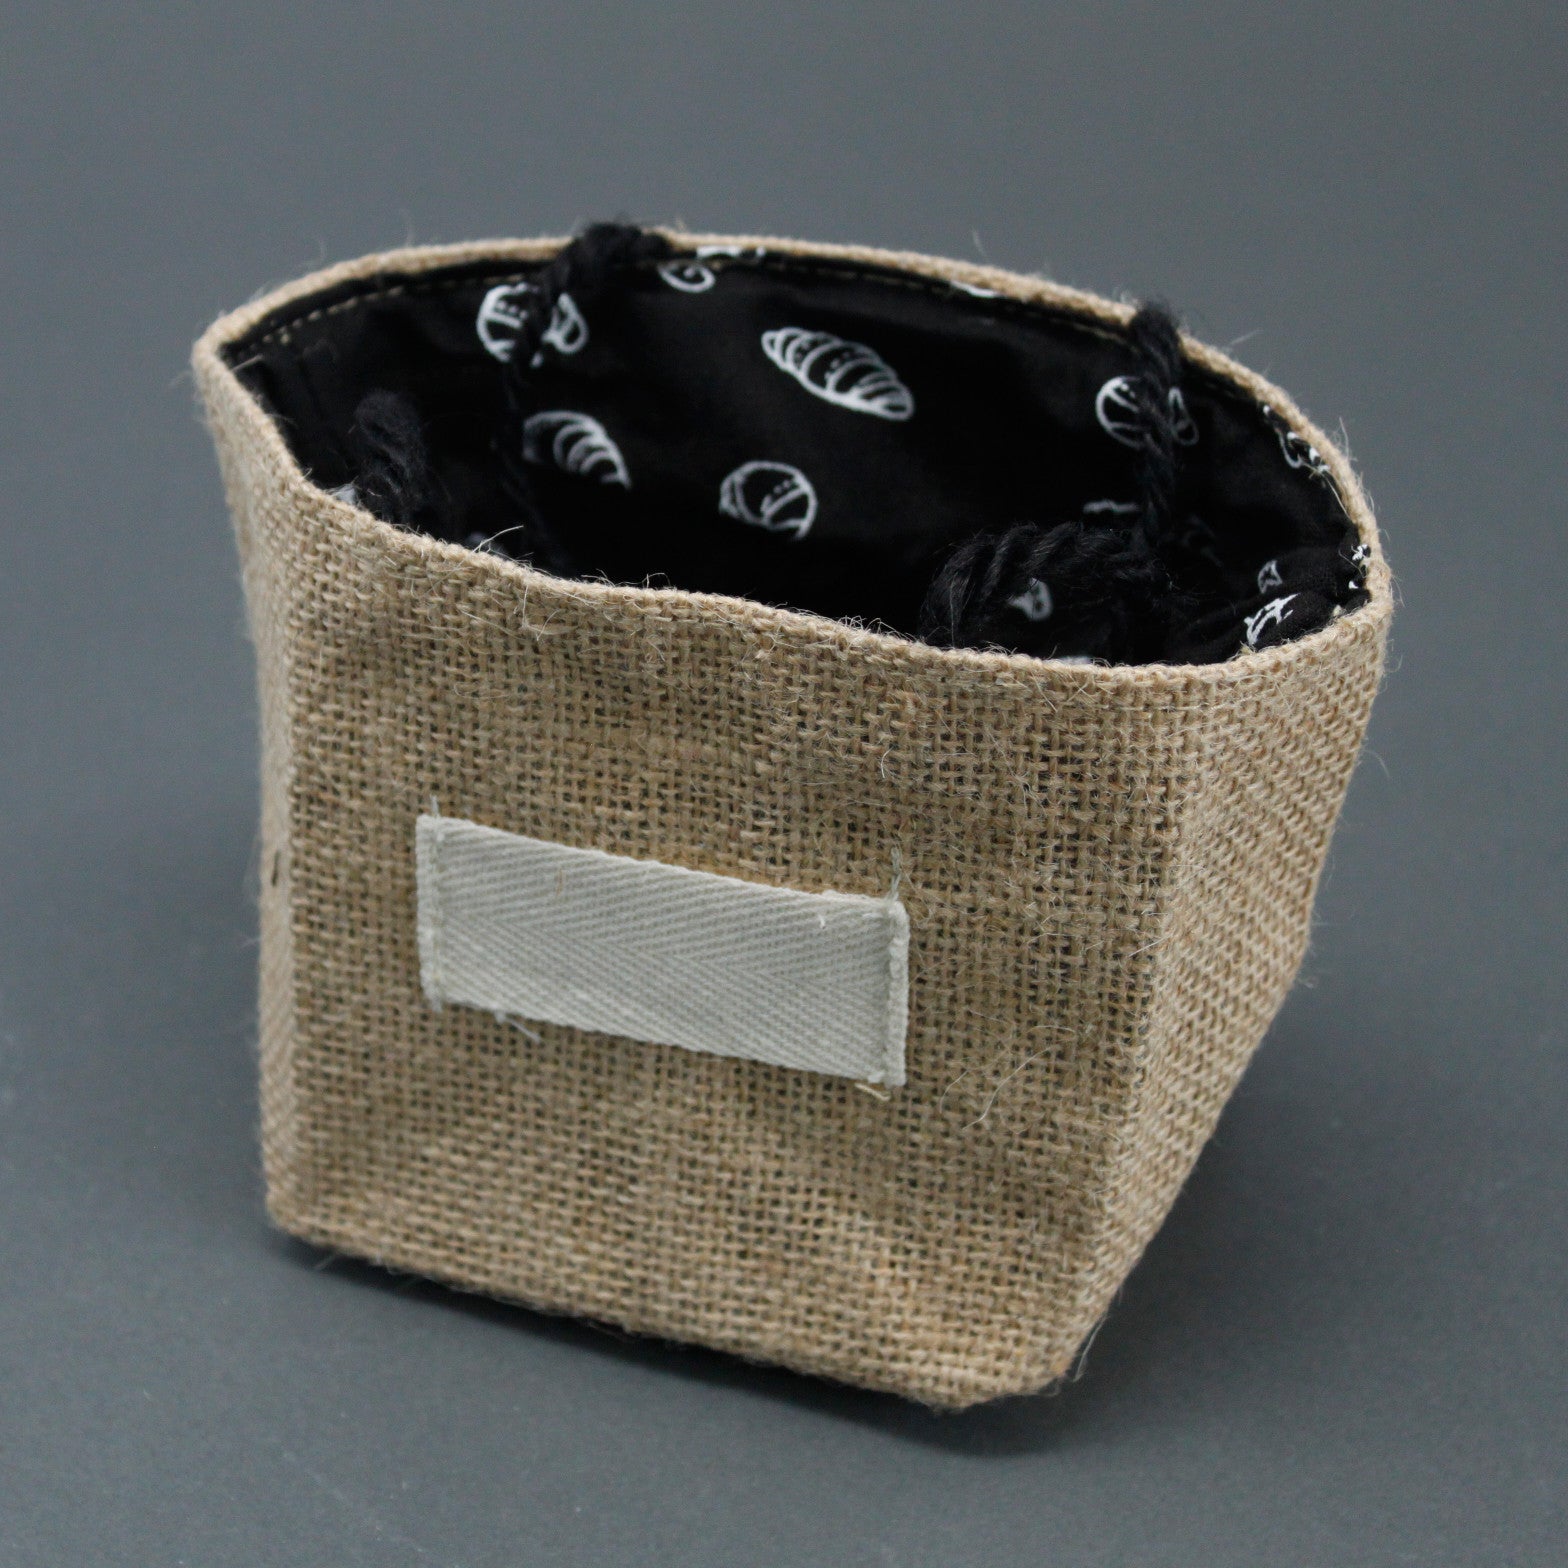 View Natural Jute Cotton Gift Bag Black Lining Medium information